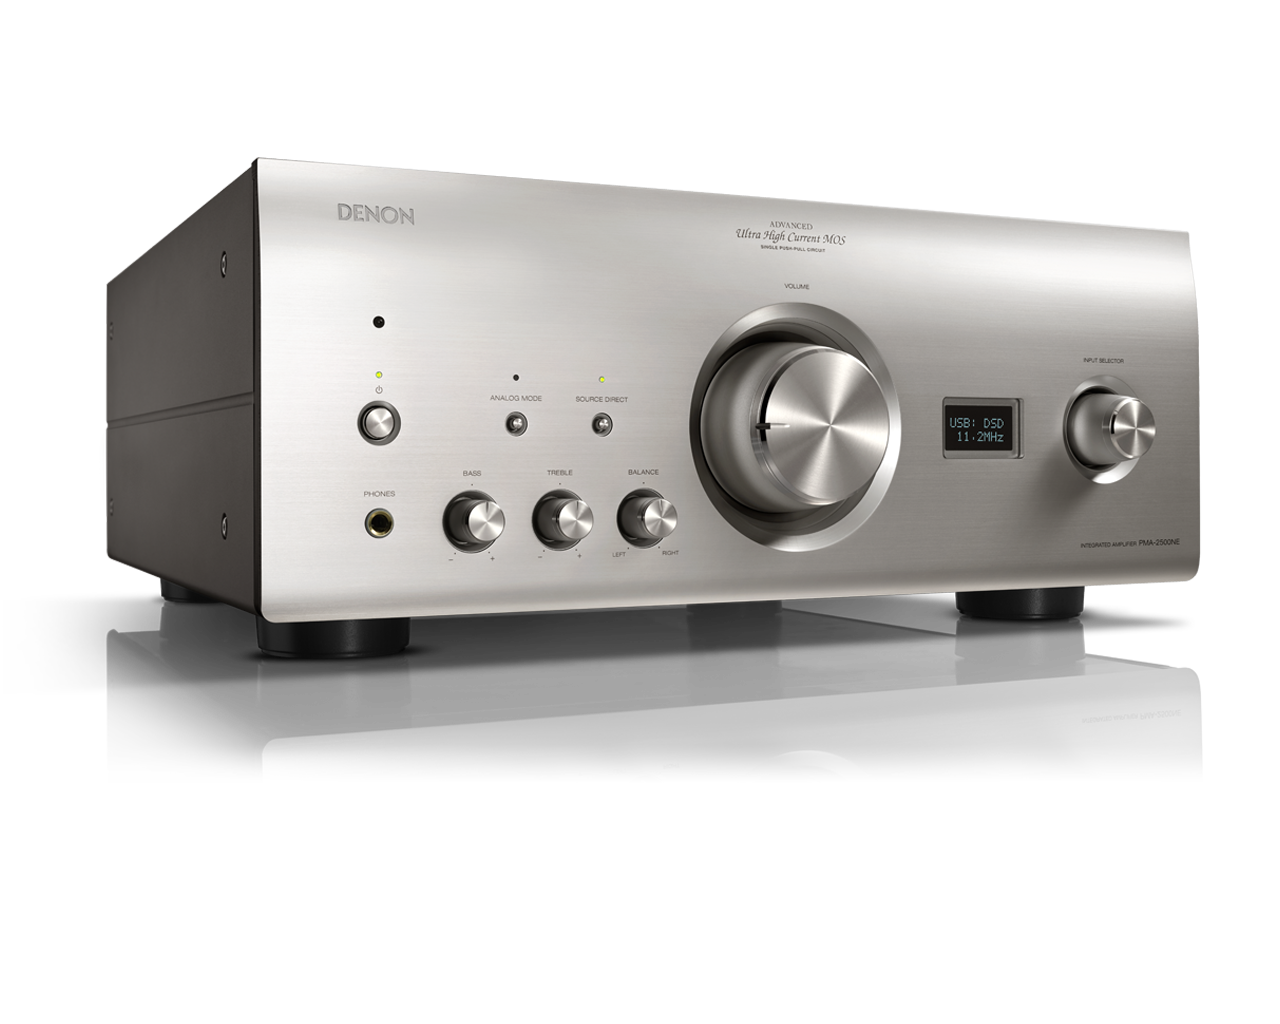 Denon PMA-2500NE - 160W Stereo Integrated Amplifier